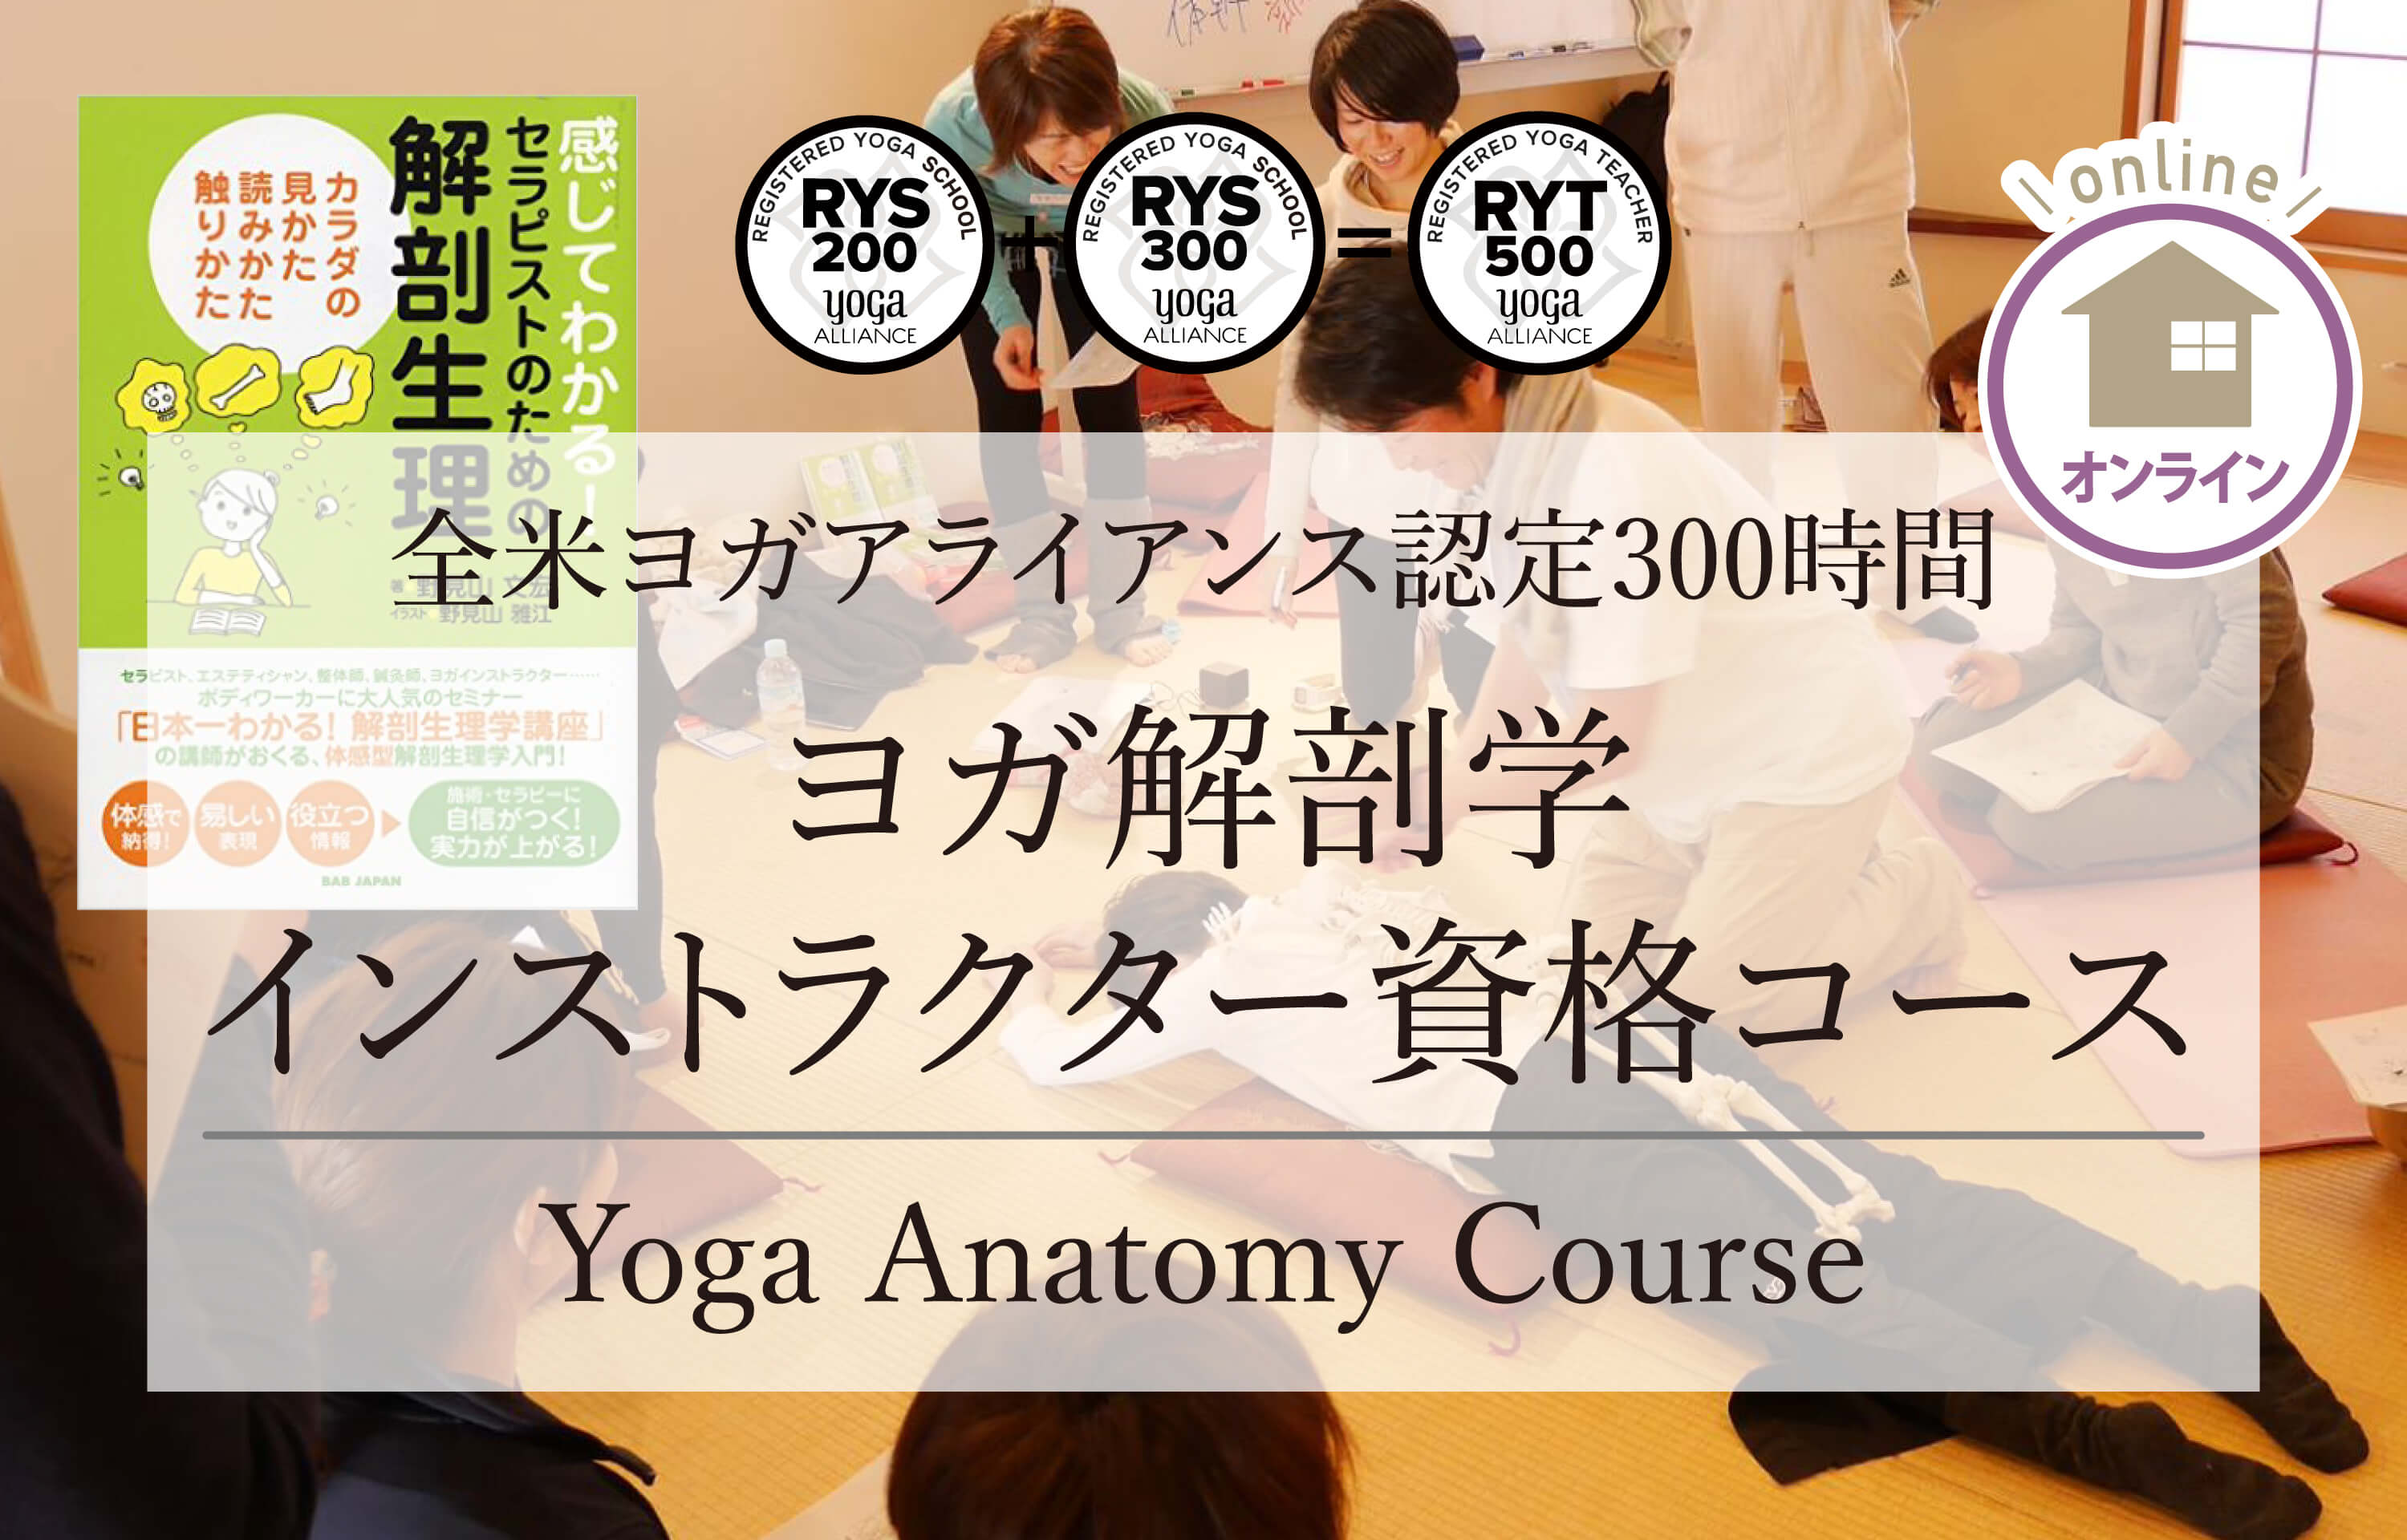 ヨガ解剖学  オンラインヨガ資格コース